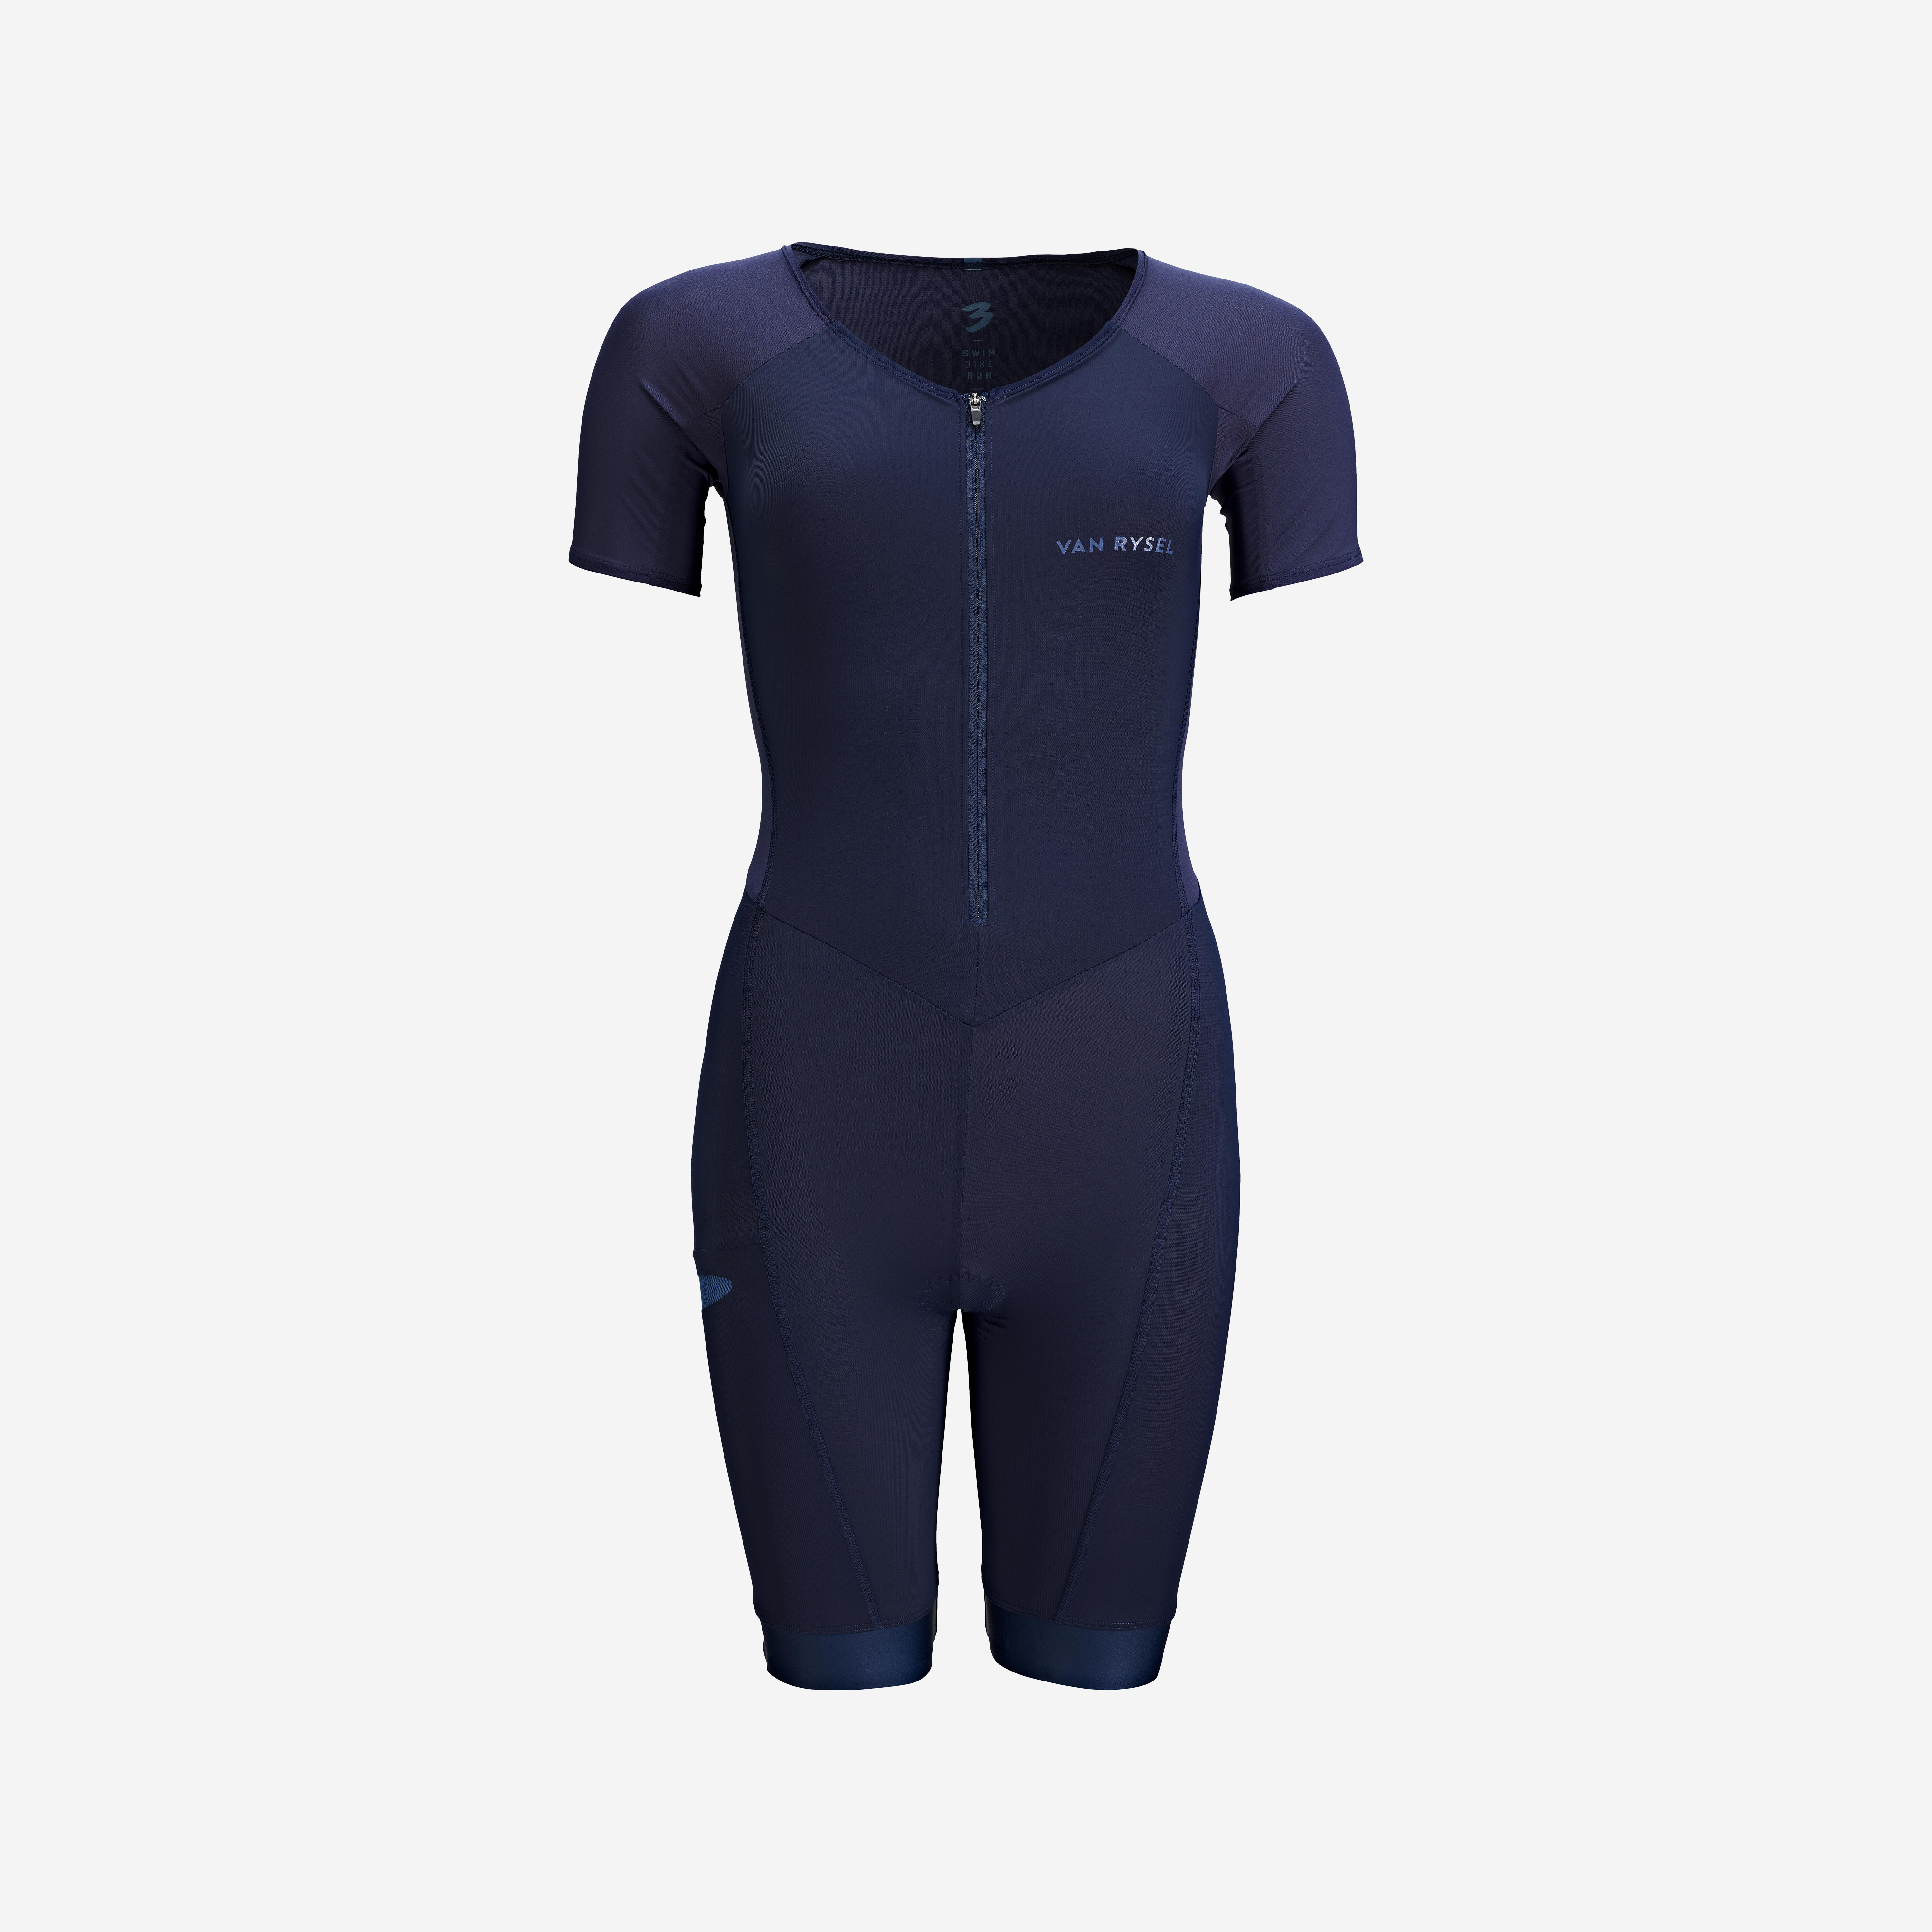 Women’s Short-Sleeved Trisuit - Navy